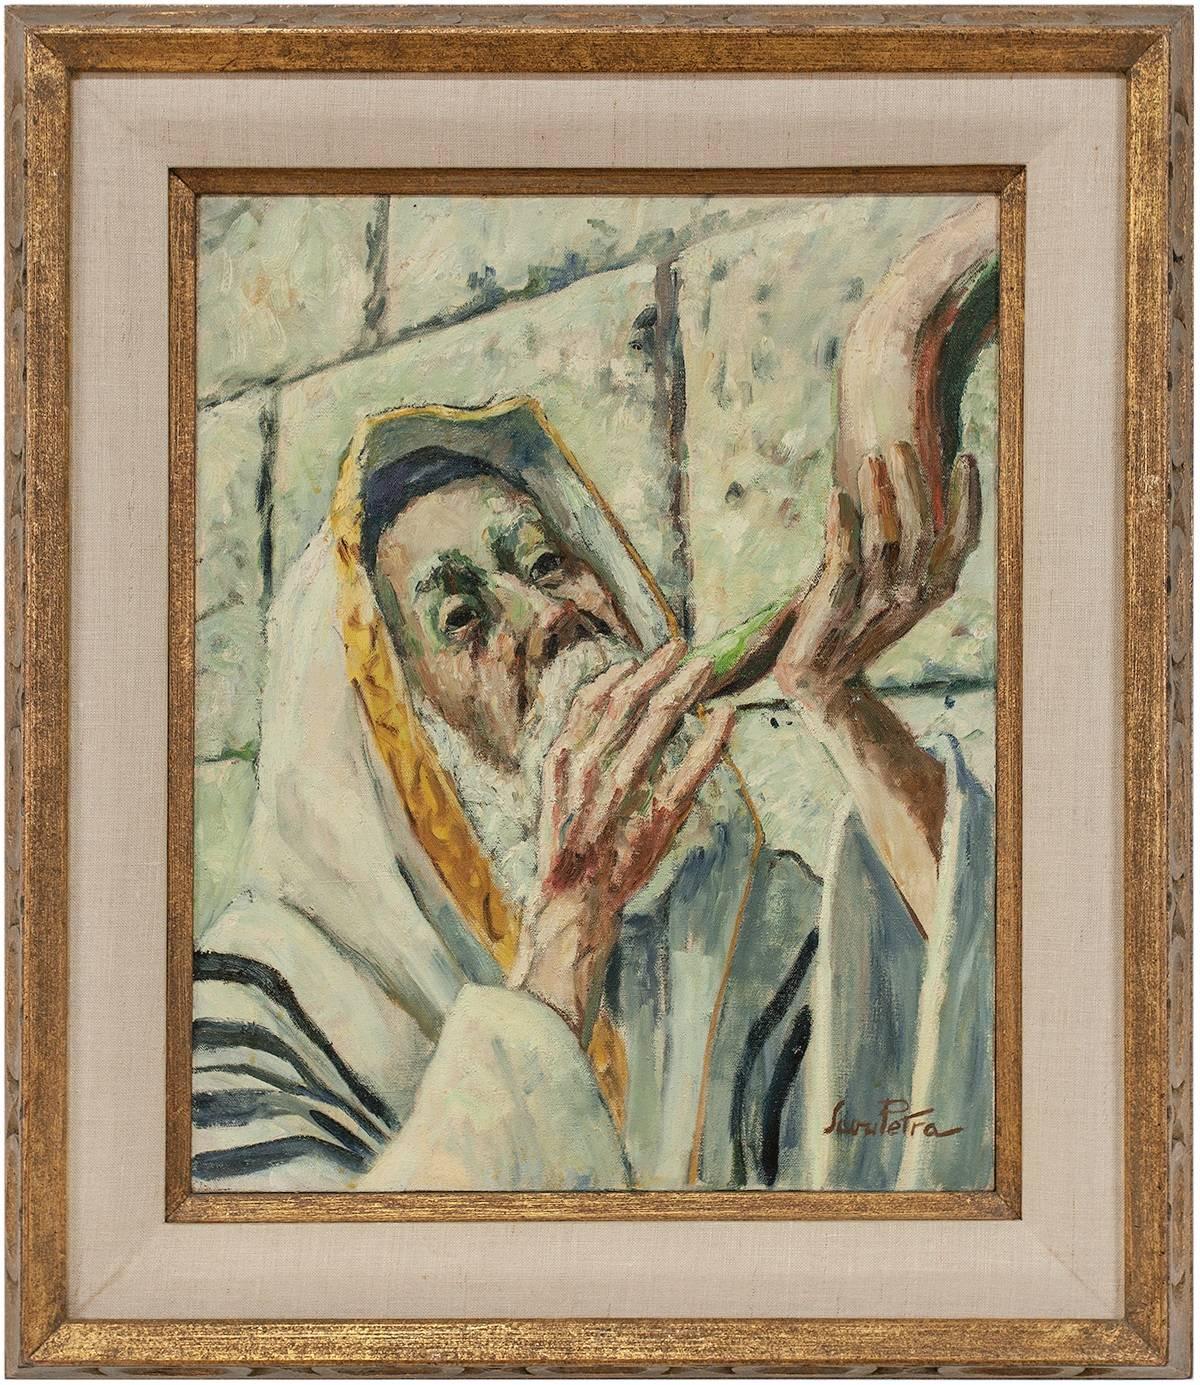 Savu Petra Dan Figurative Painting - Judaica Painting Blowing Shofar at the Western Wall